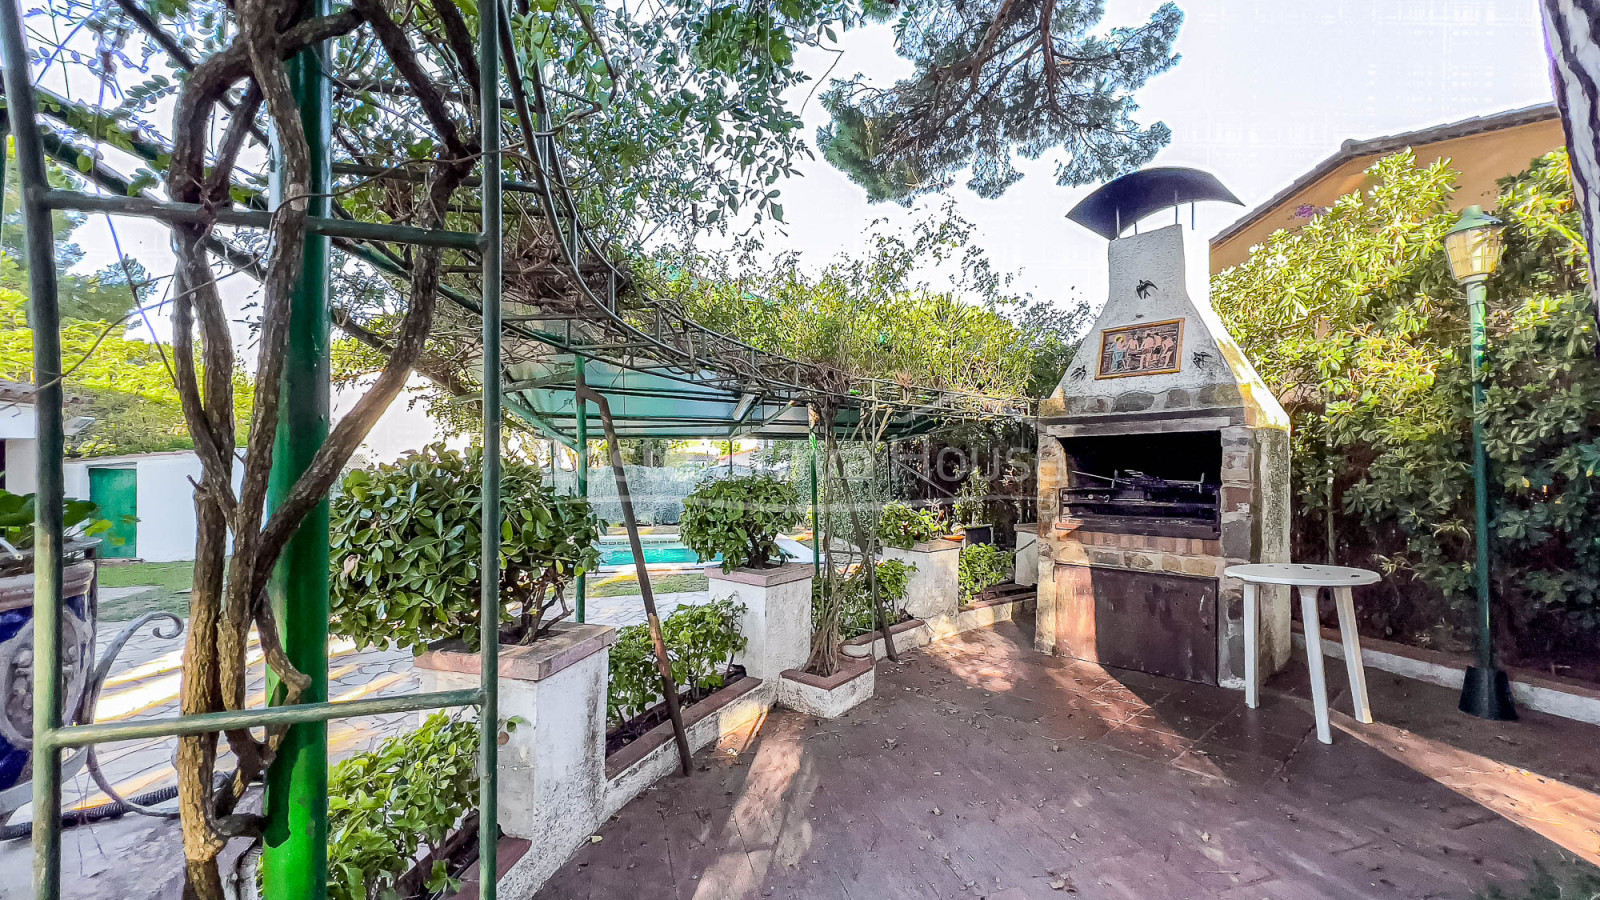 Casa mediterránea con jardín y piscina a 5 minutos de Begur